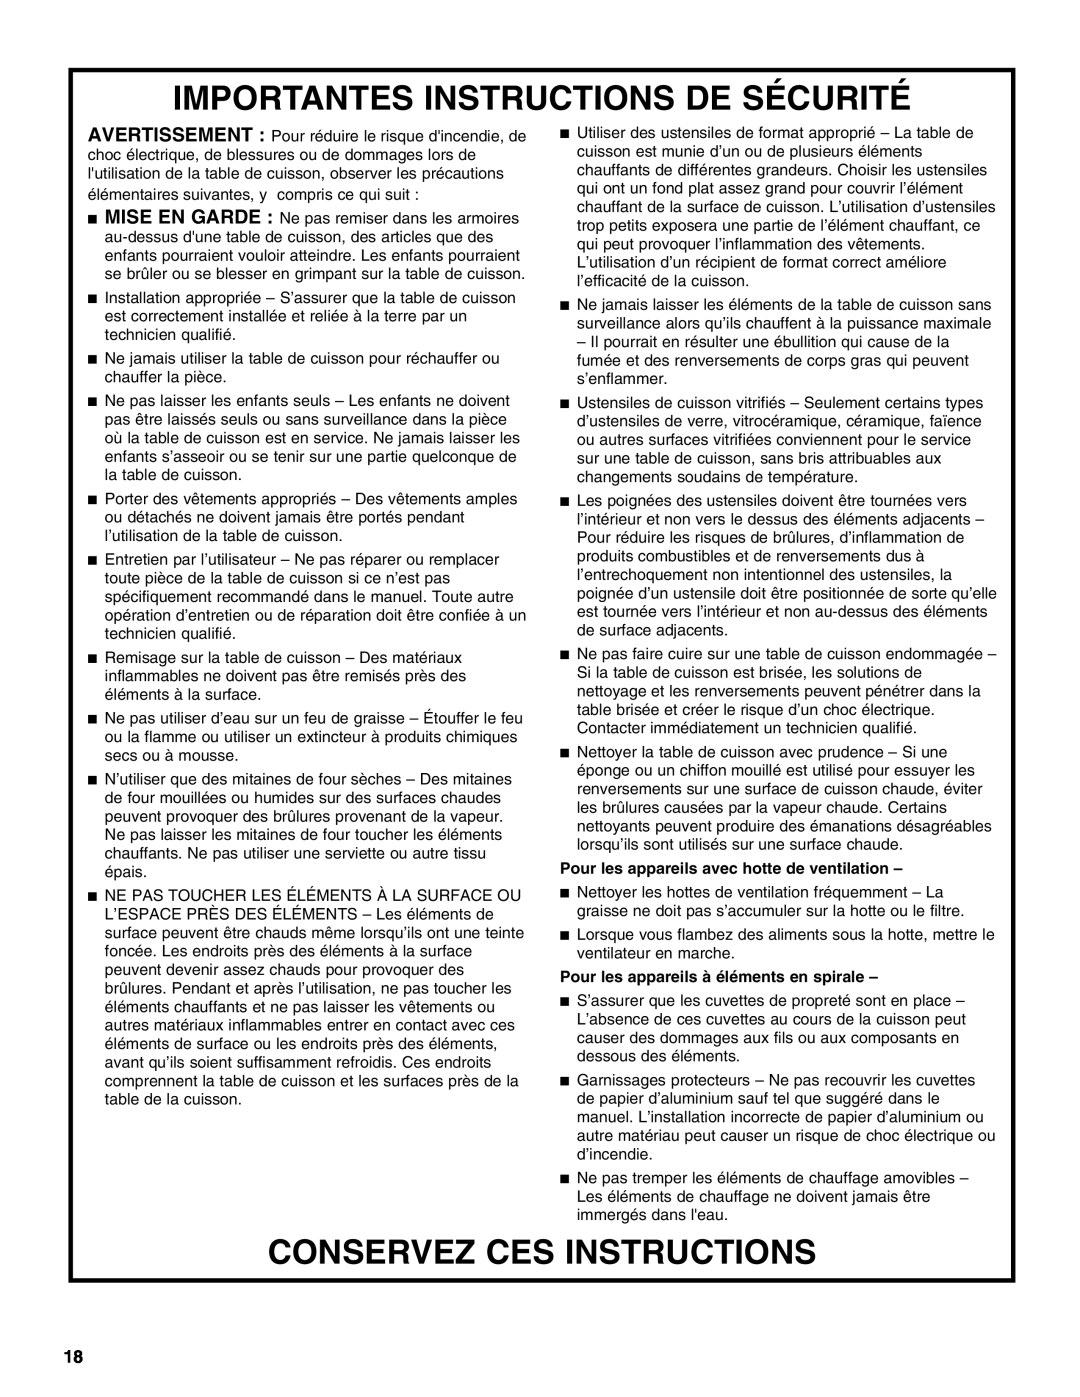 Whirlpool G9CE3065XB manual Importantes Instructions De Sécurité, Conservez Ces Instructions 